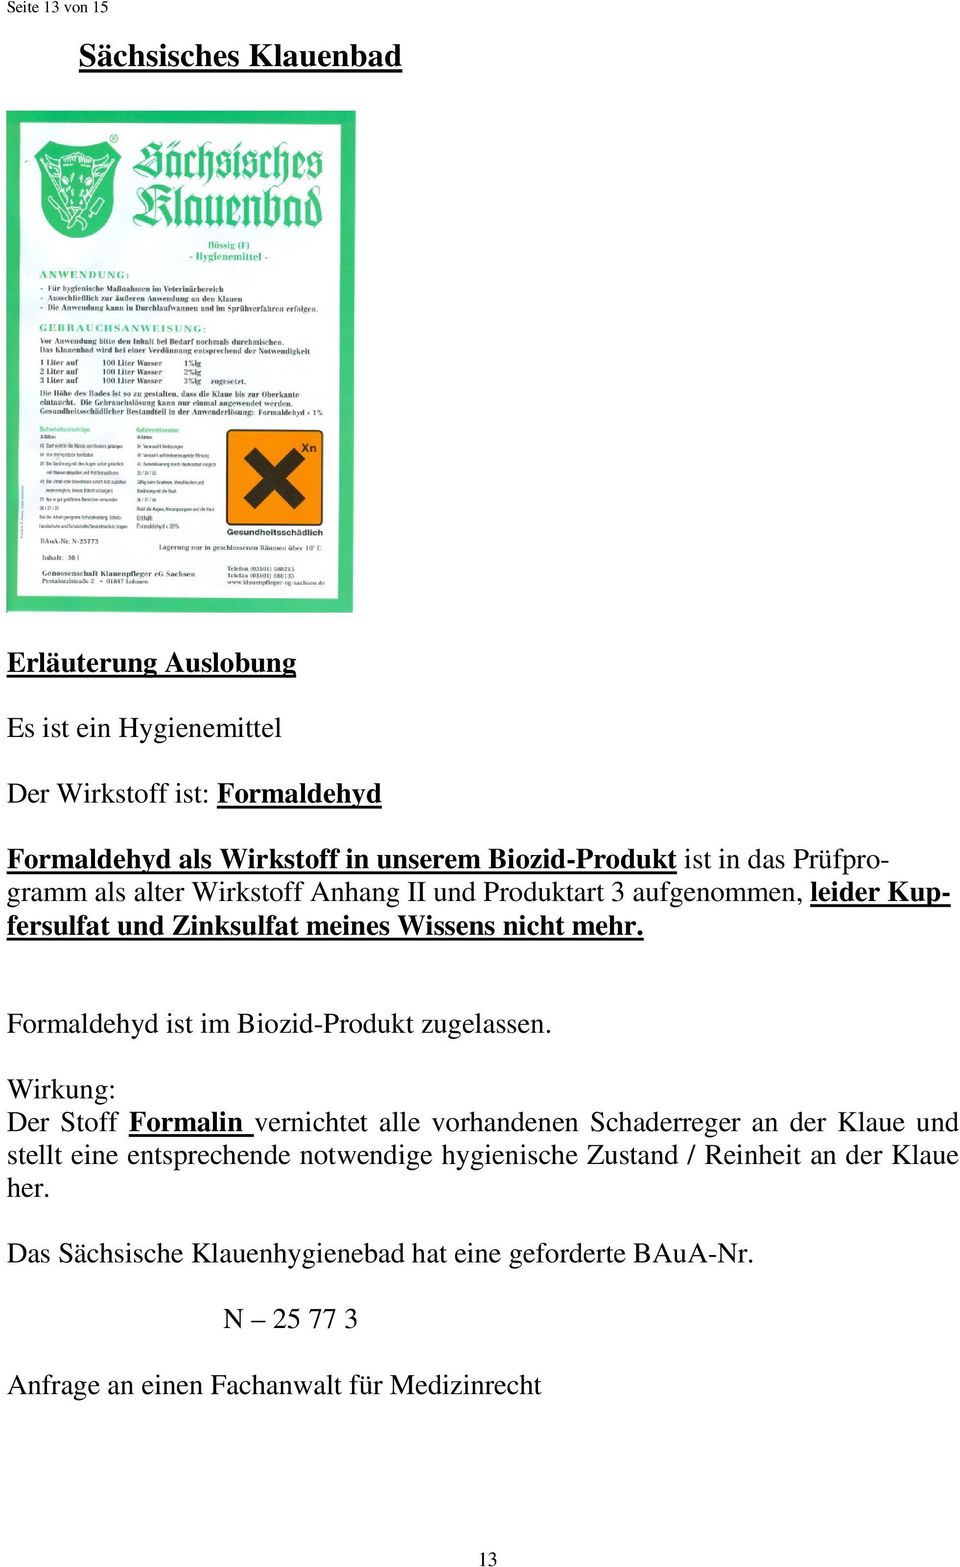 Formaldehyd ist im Biozid-Produkt zugelassen.